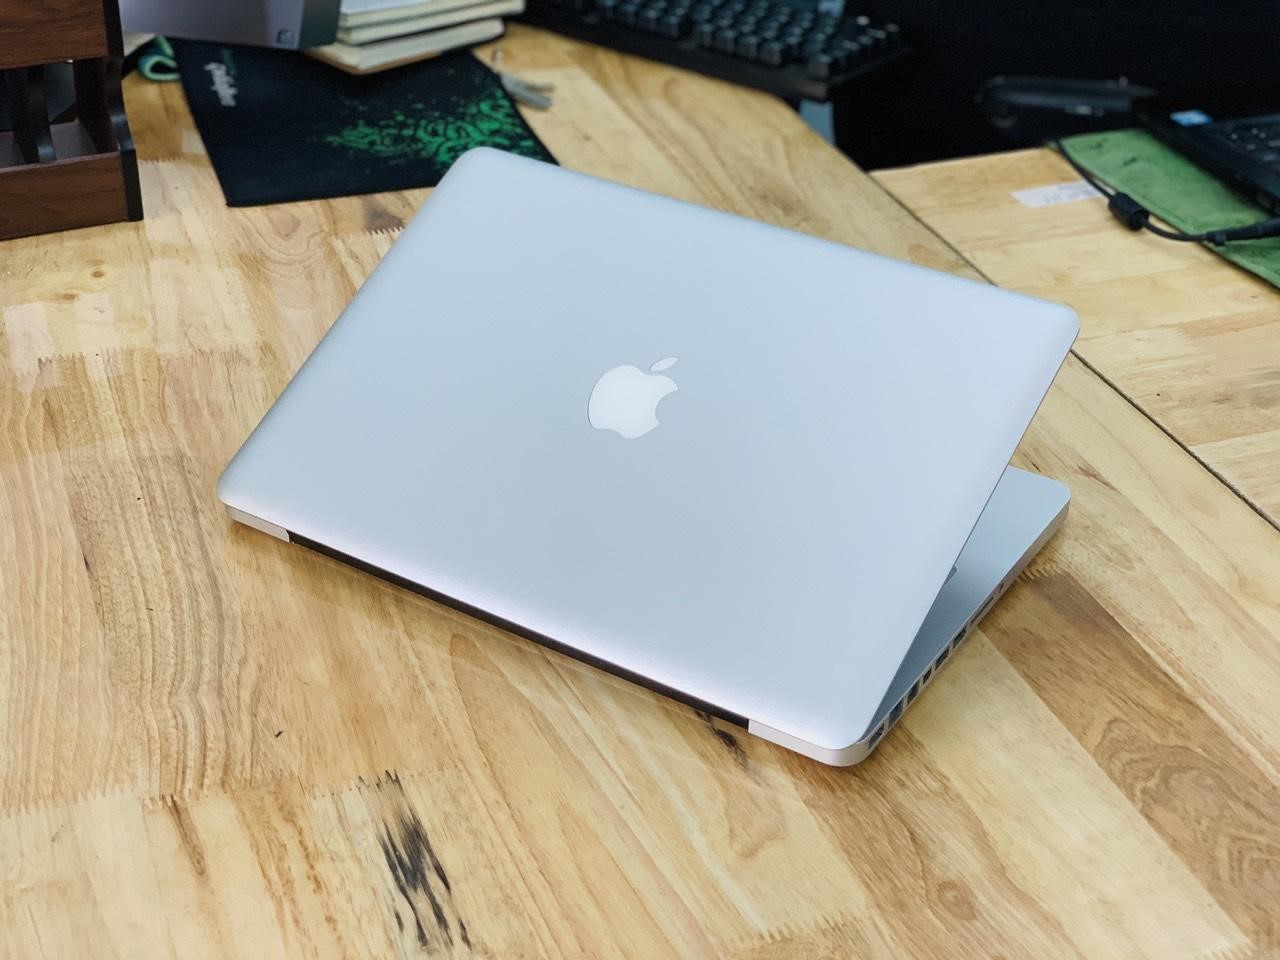 Kinh nghiệm sửa máy tính macbook chất lượng, tiết kiệm